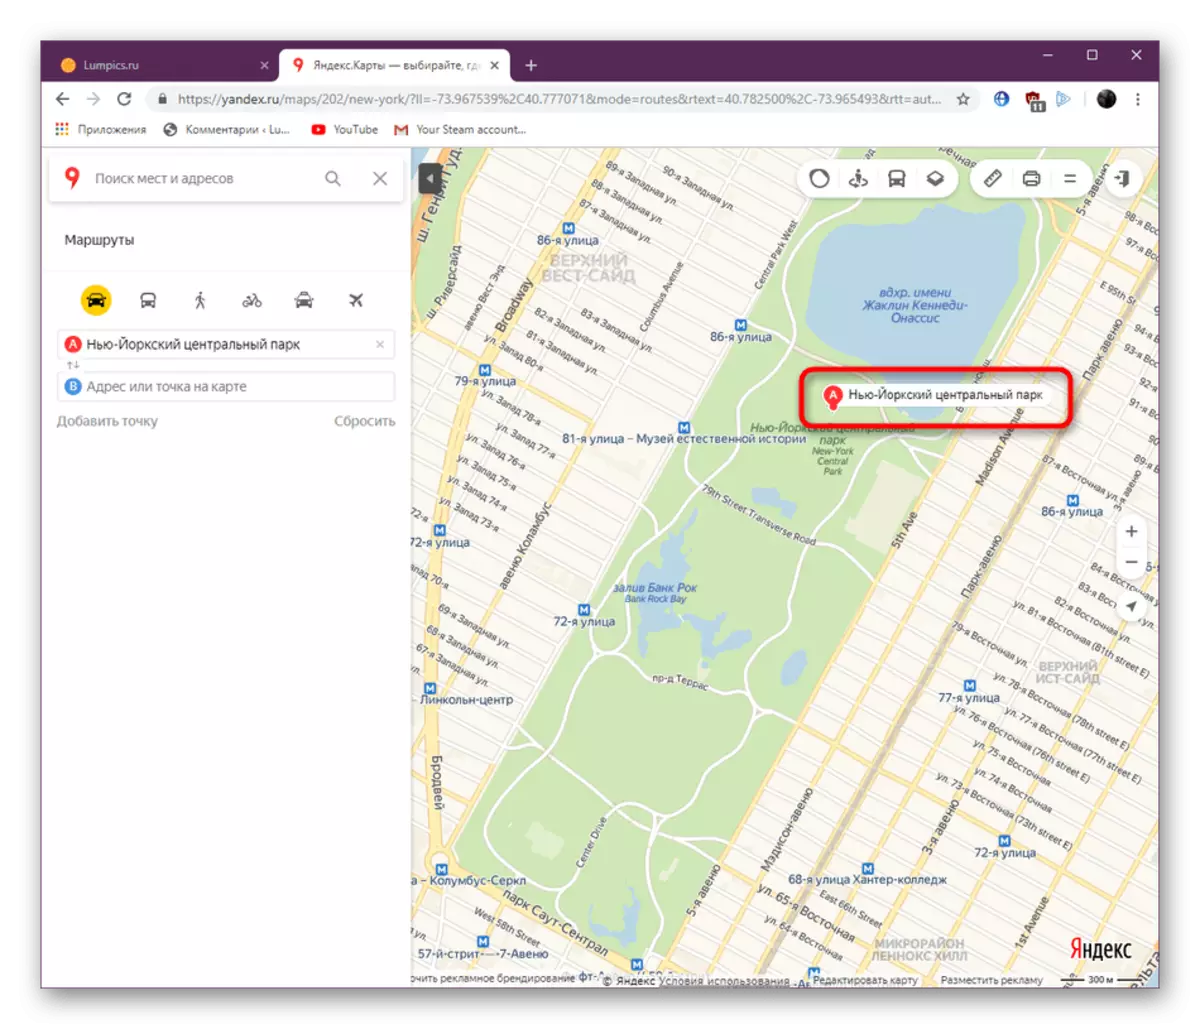 साइट Yandex.maps के पूर्ण संस्करण में मार्ग का पहला बिंदु प्रदर्शित करना